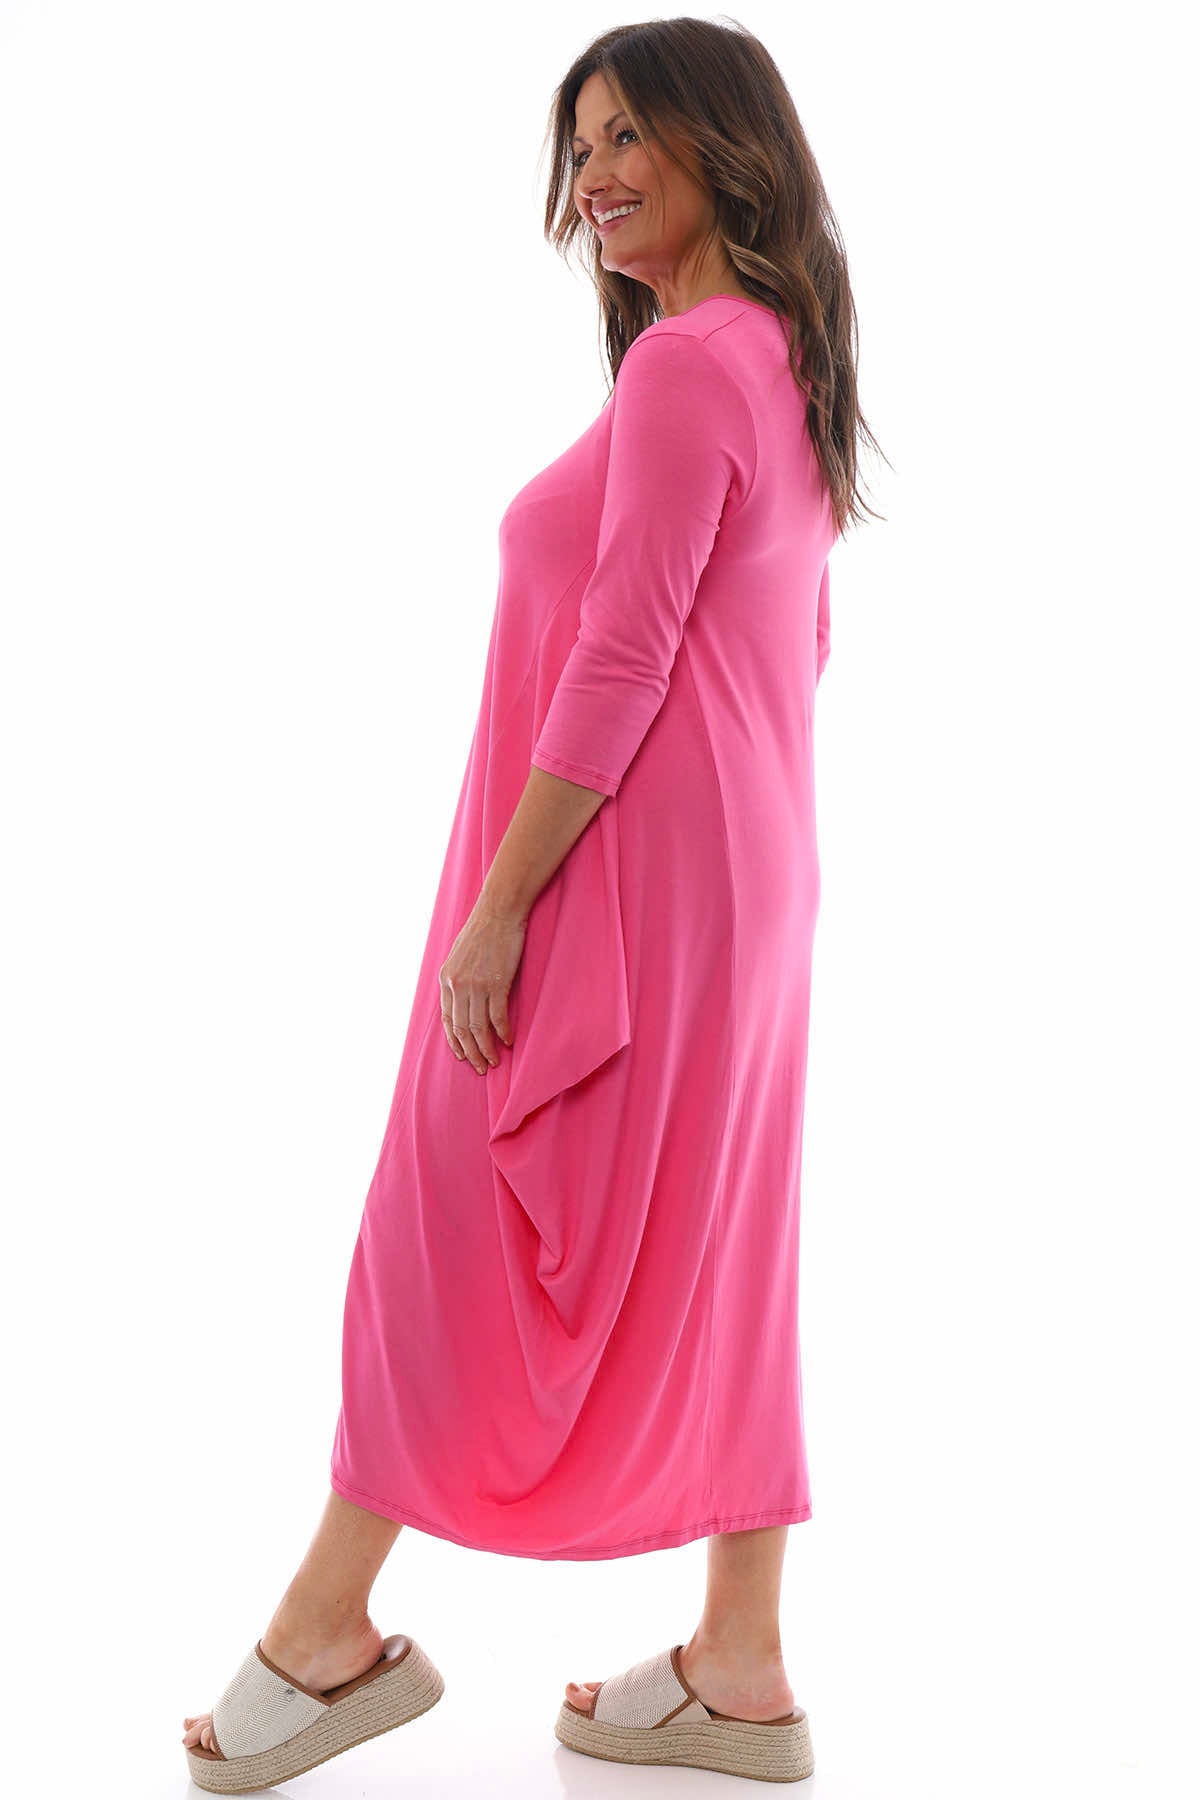 Boswin Dress Bubblegum Pink